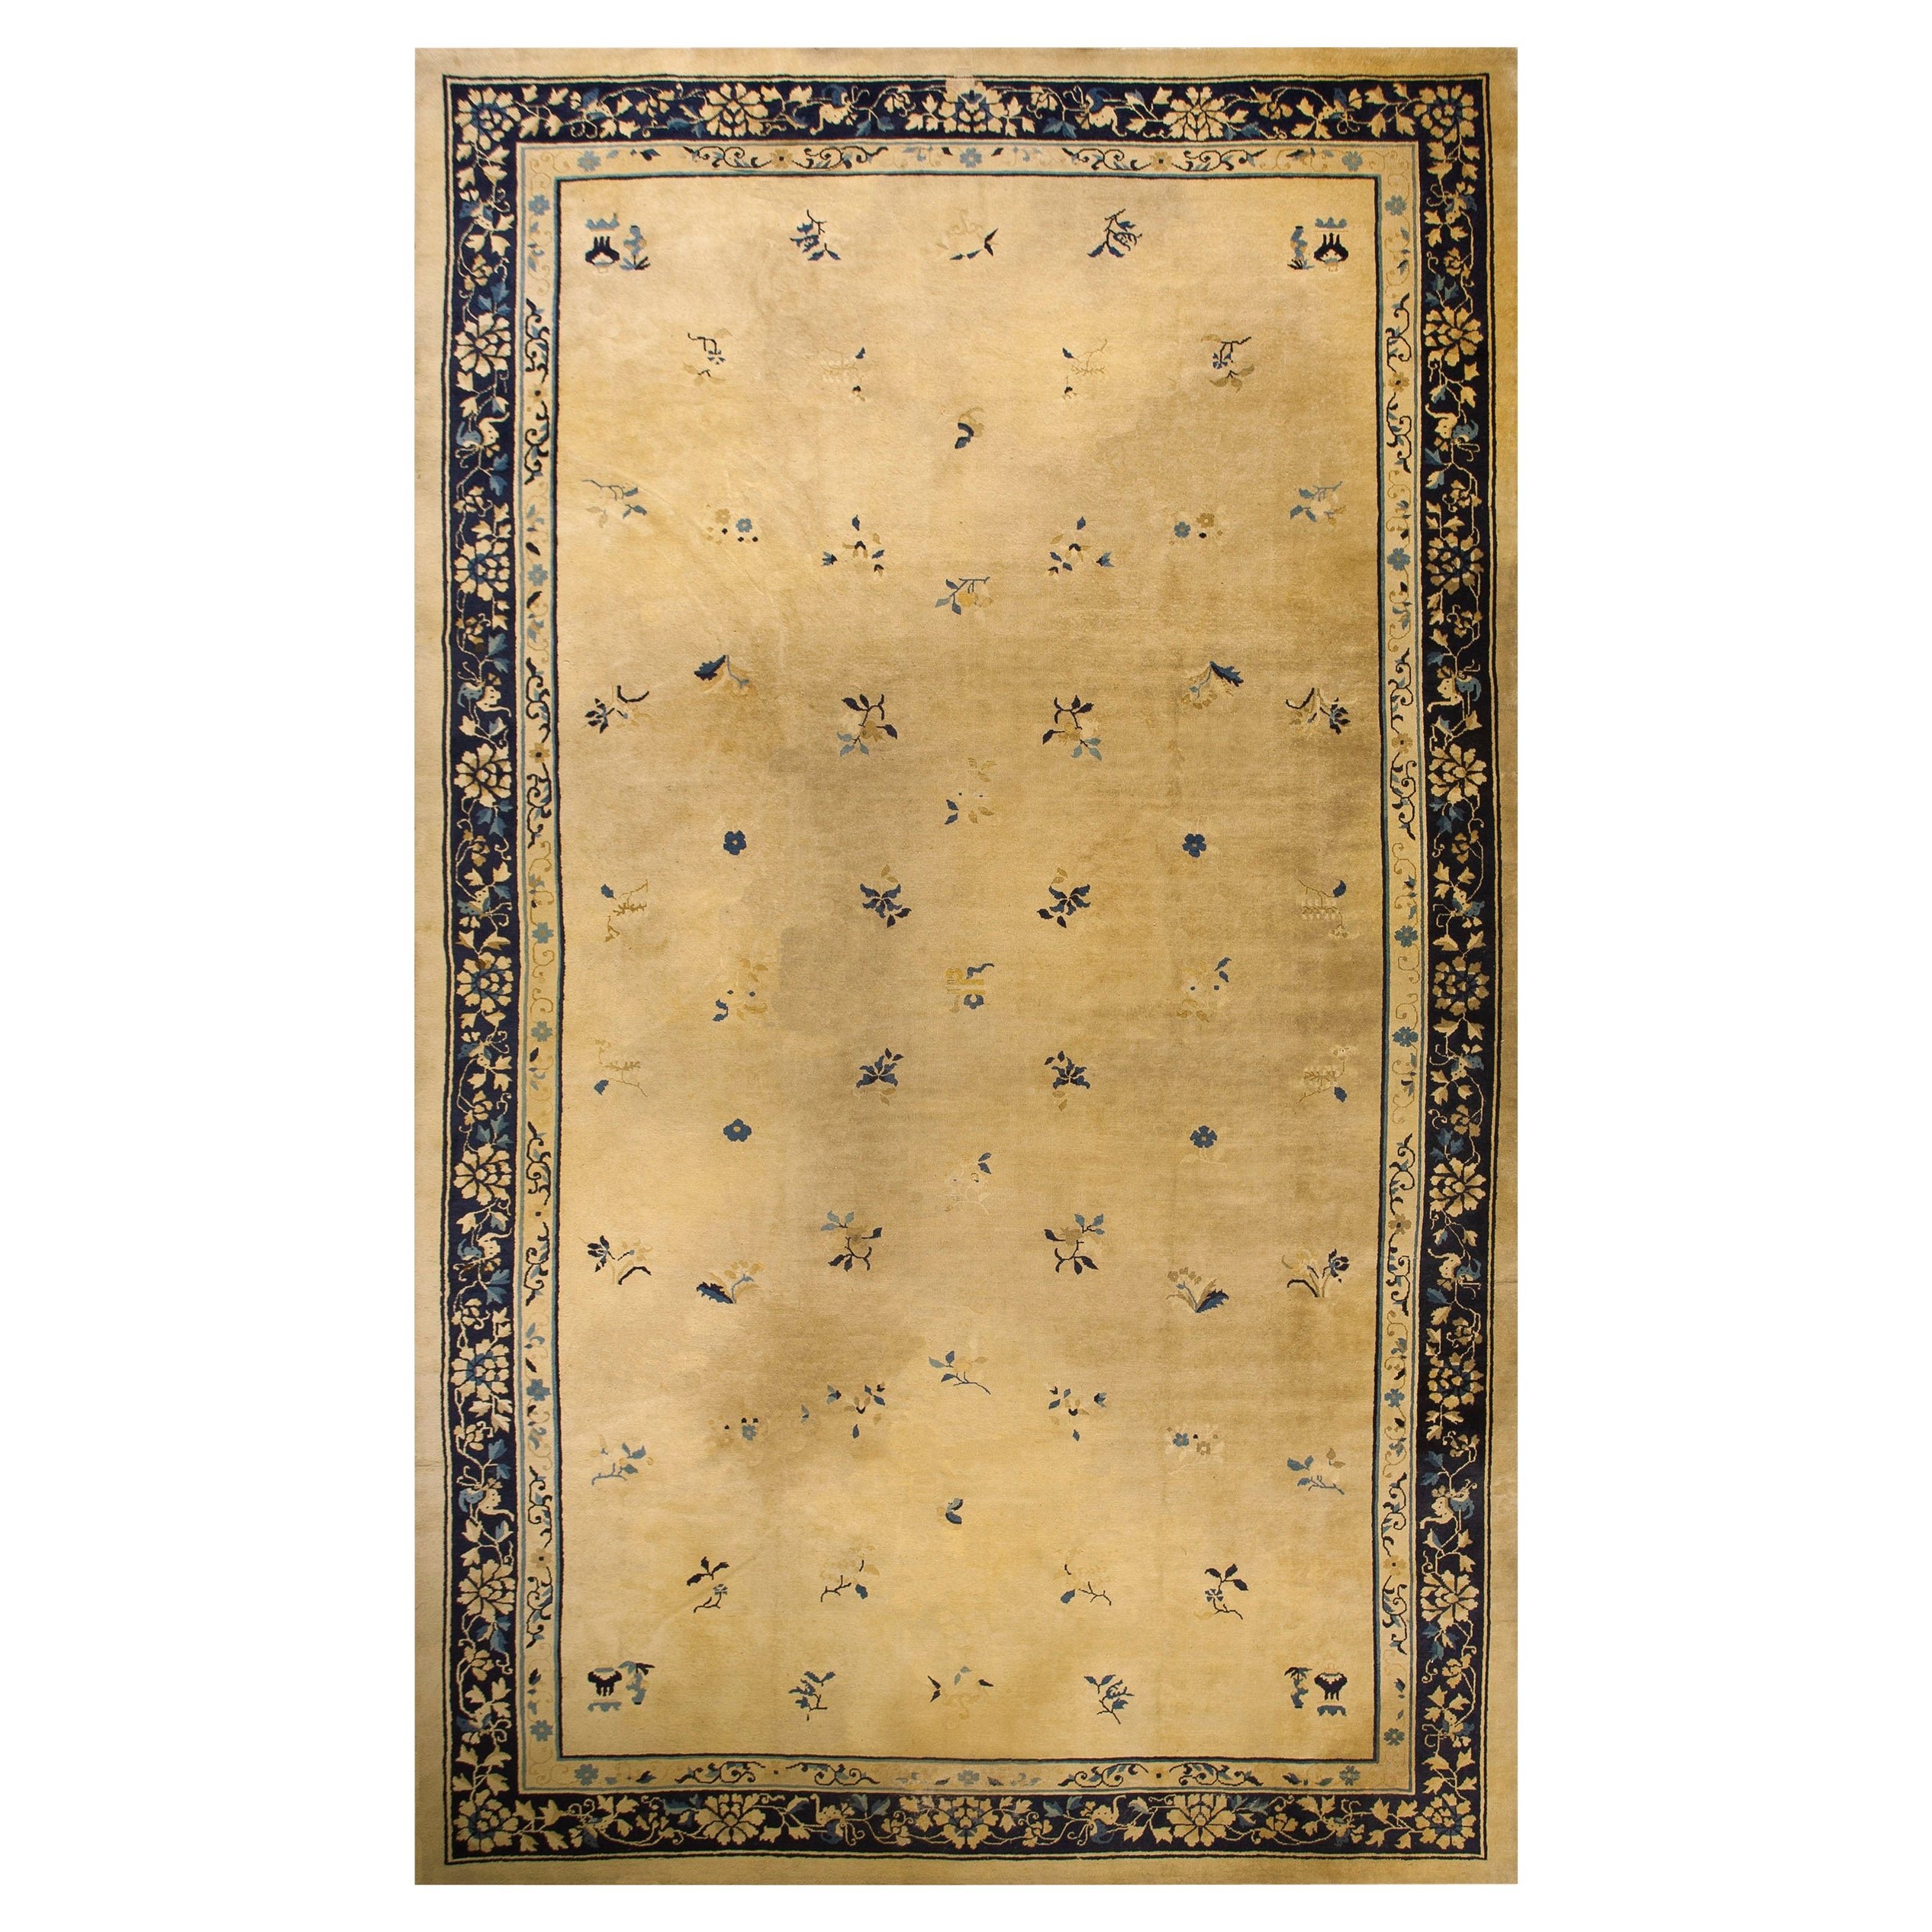 Chinesischer Peking-Teppich des frühen 20. Jahrhunderts ( 10''3'''' x 17''5'''' - 313 x 530 )